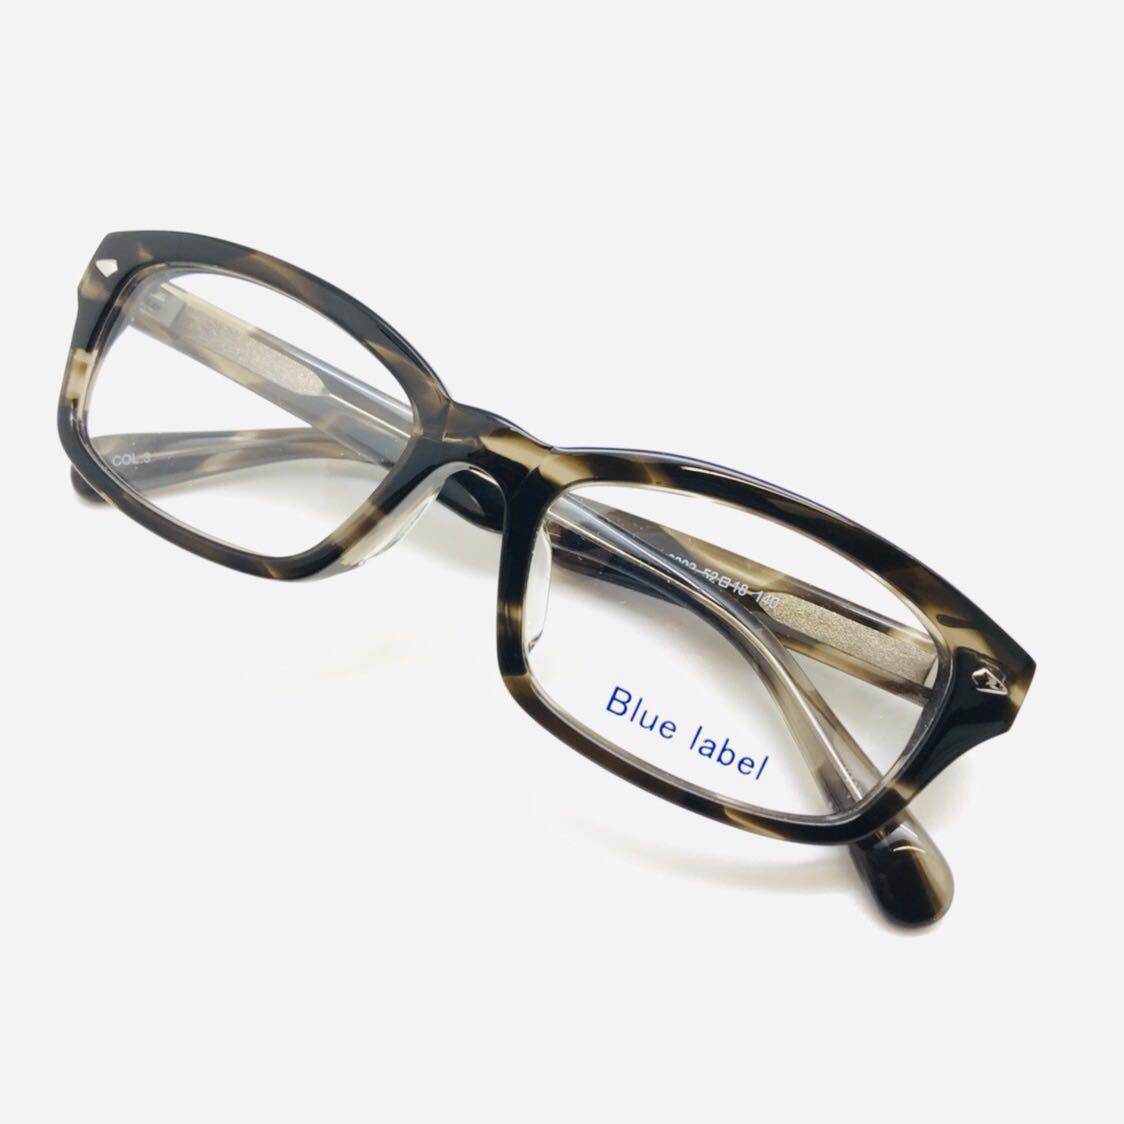 新品 ブランド Blue label ブルーレーベル 眼鏡 メガネ 綺麗 上品 オシャレ ブラック ブラウン